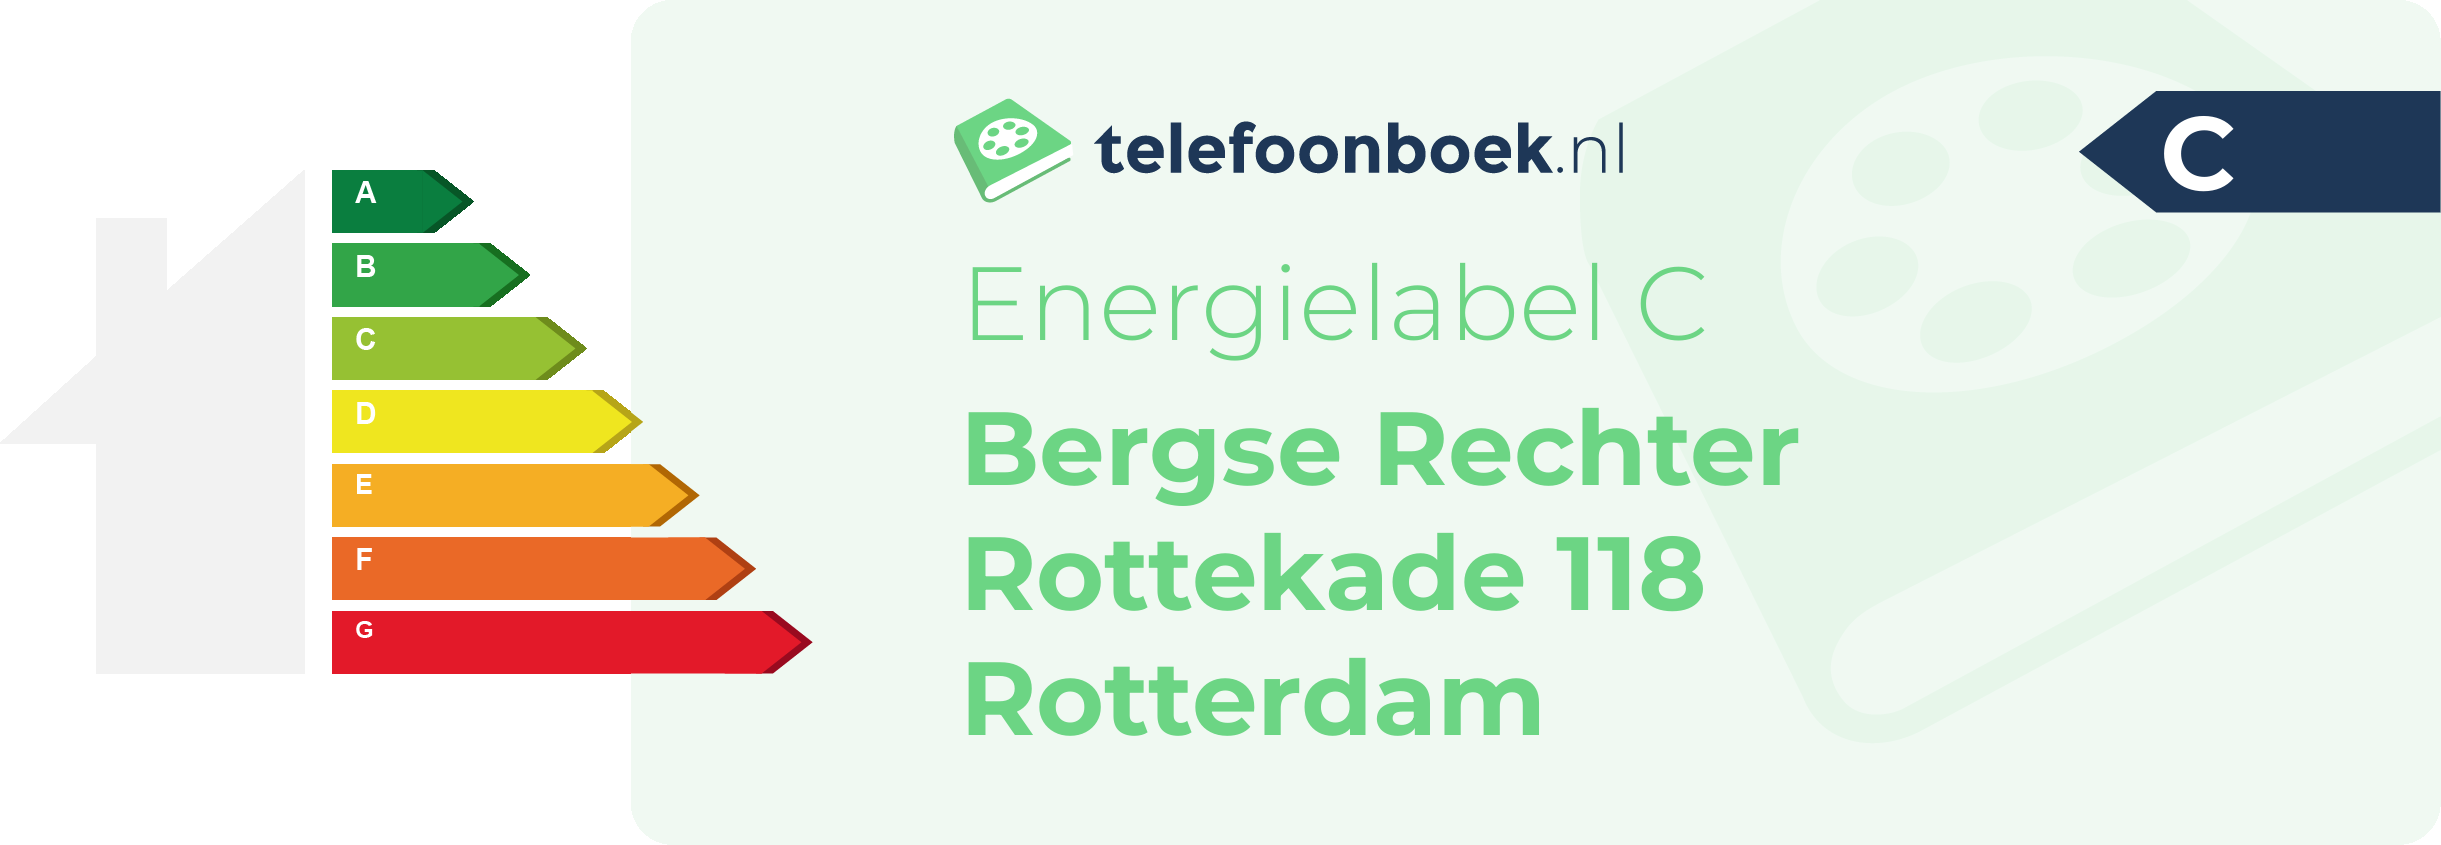 Energielabel Bergse Rechter Rottekade 118 Rotterdam